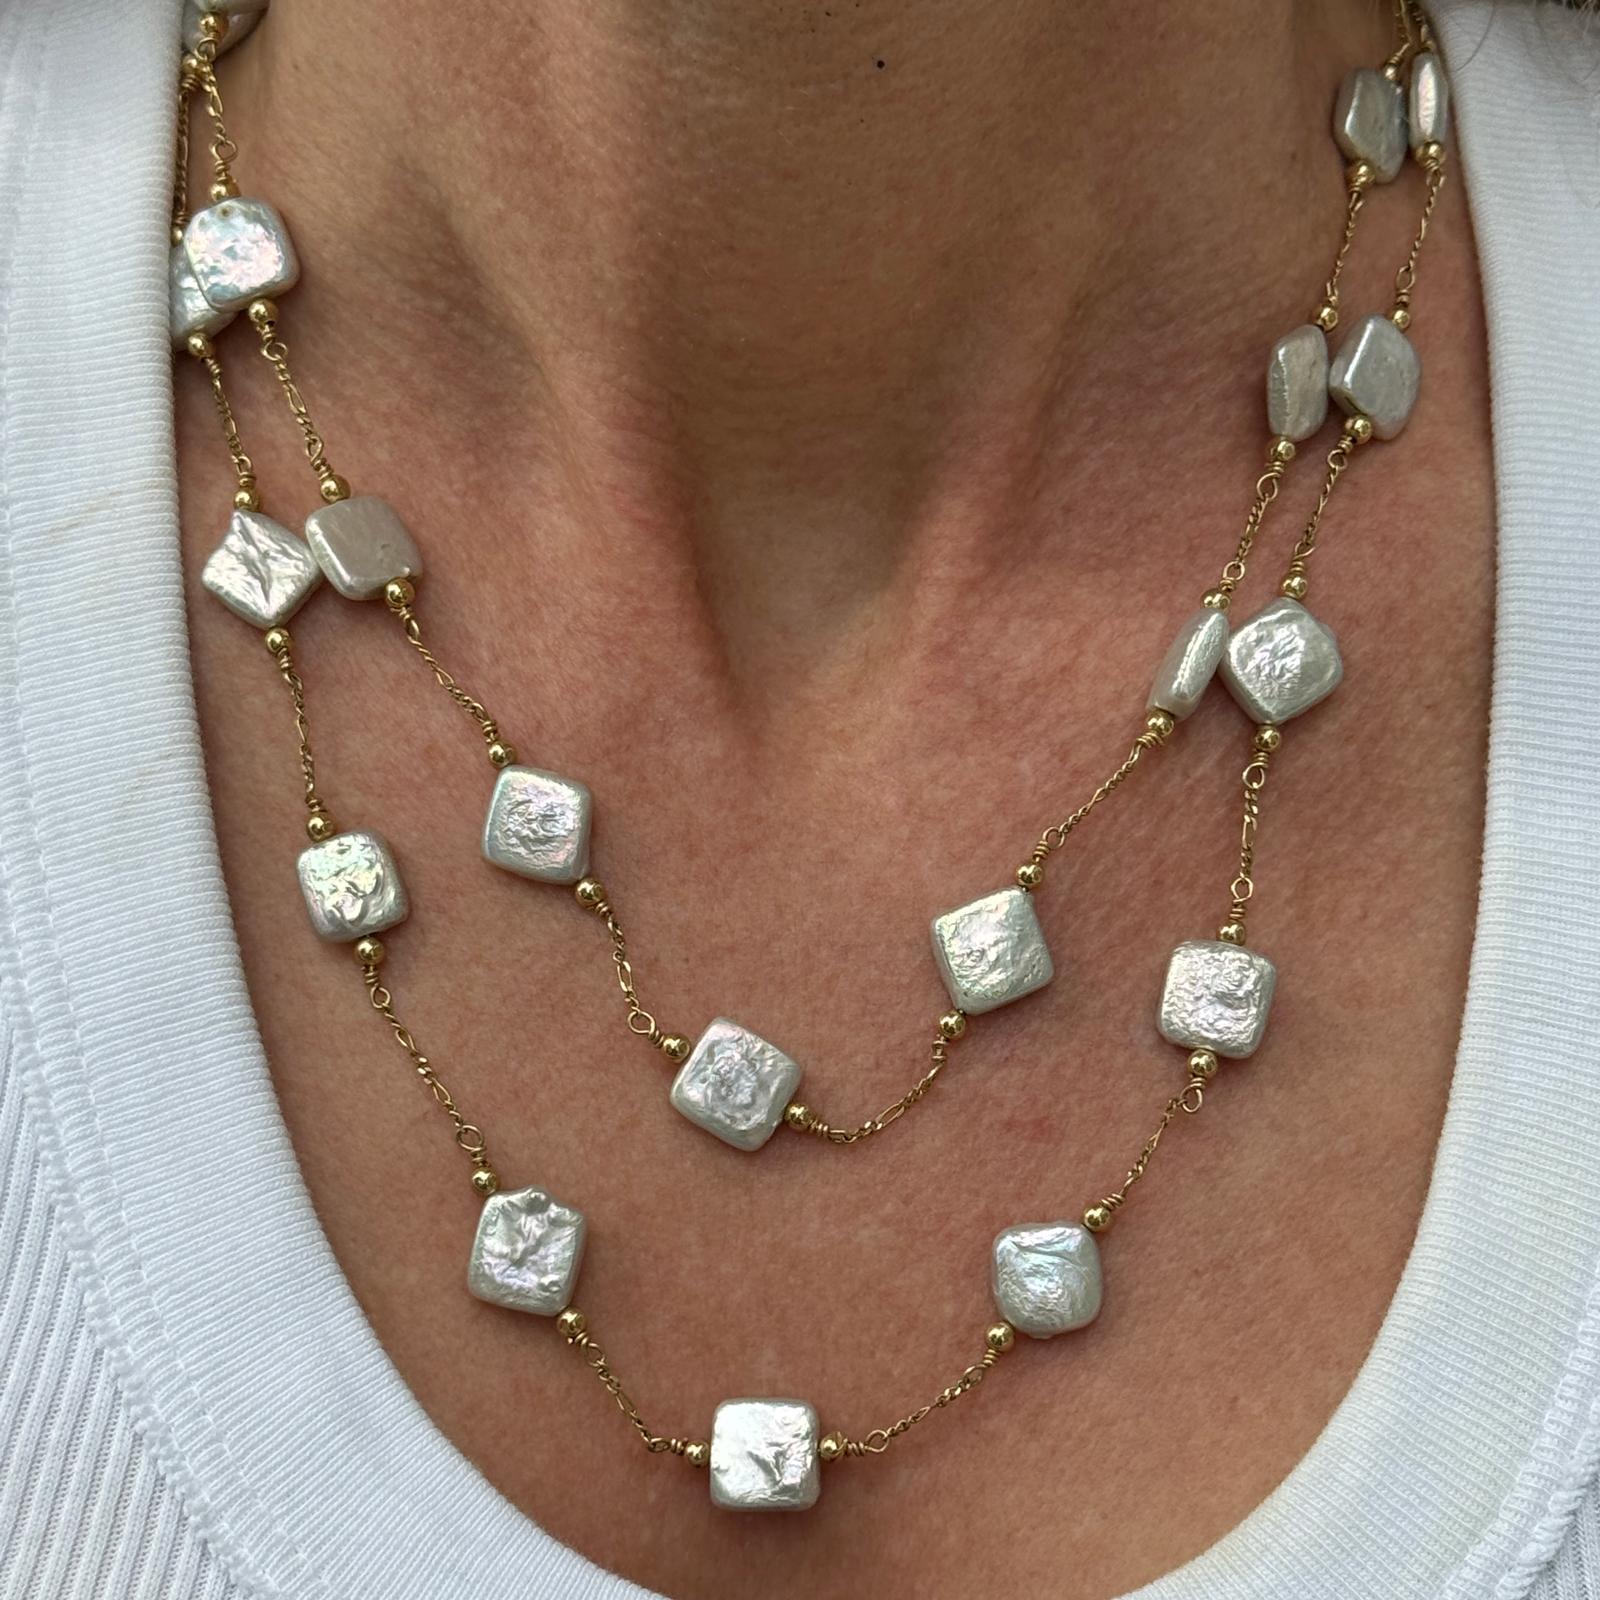 Collier féminin à deux rangs de perles en or jaune 14 carats. Le collier est composé de perles de culture carrées espacées le long d'une chaîne à deux rangs. Le collier mesure 17 pouces (brin le plus court) et 19 pouces. Poids : 26 grammes.